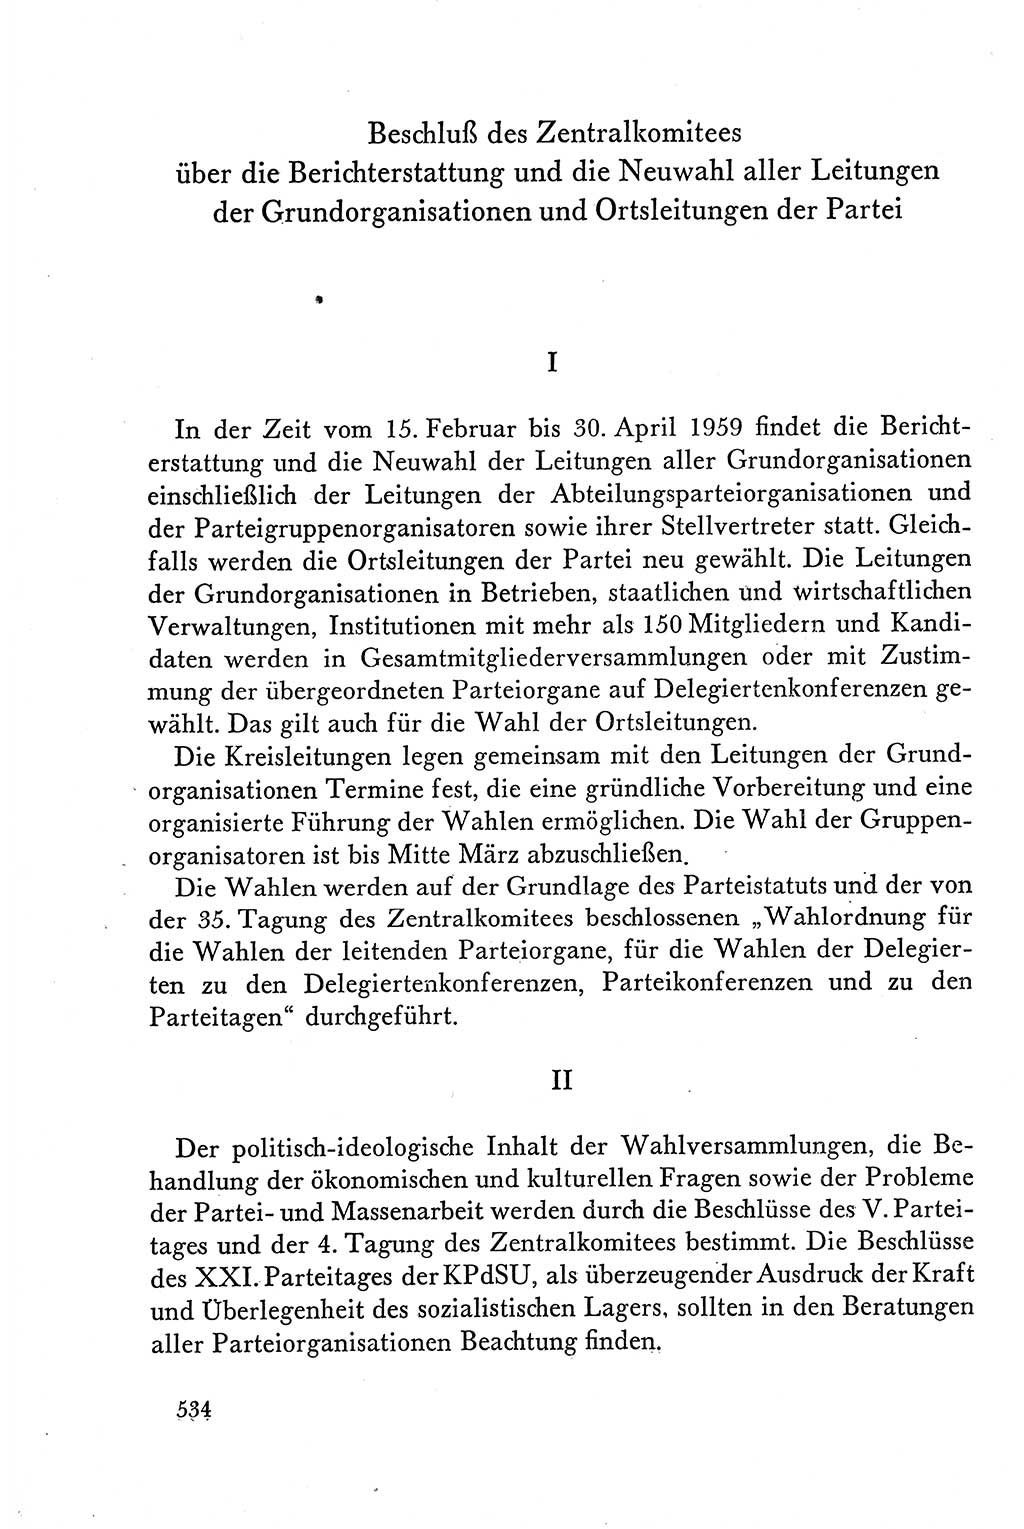 Dokumente der Sozialistischen Einheitspartei Deutschlands (SED) [Deutsche Demokratische Republik (DDR)] 1958-1959, Seite 534 (Dok. SED DDR 1958-1959, S. 534)